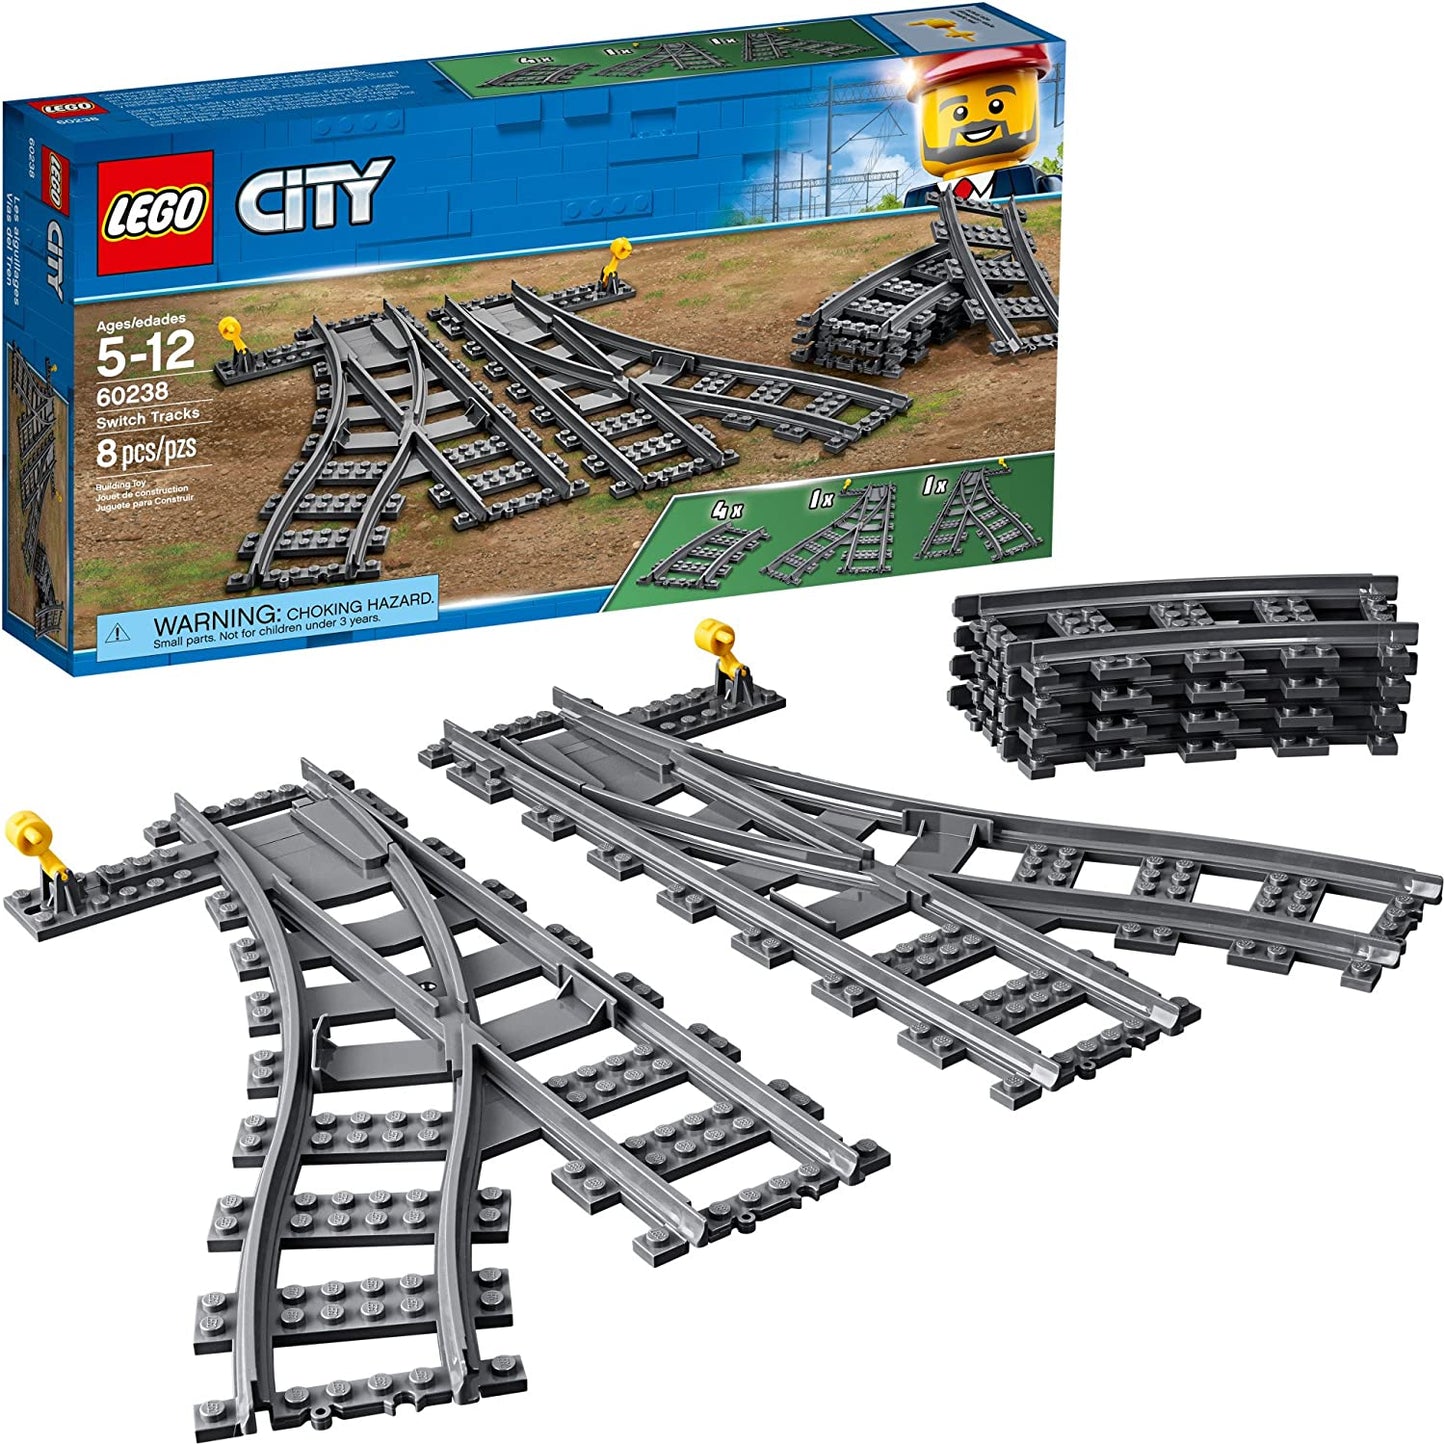 LEGO City - Switch Tracks 60238